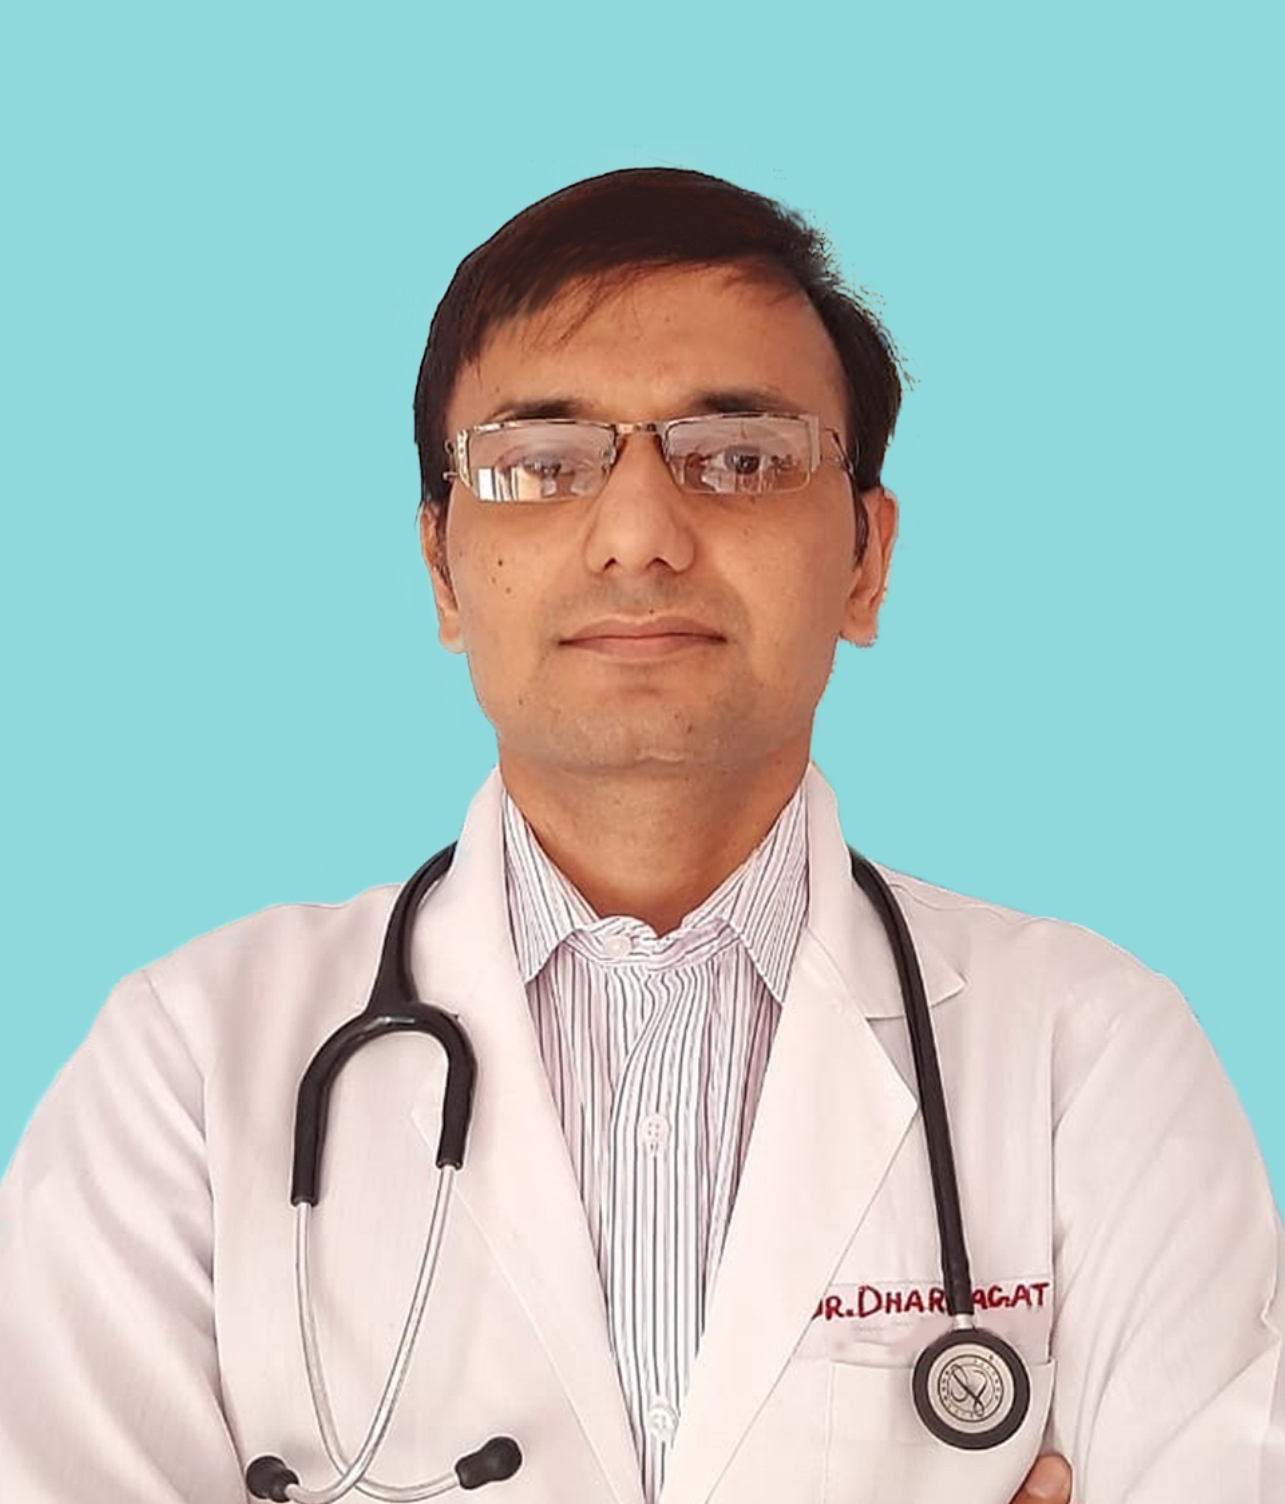 Dr. Dharmagat Bhattarai